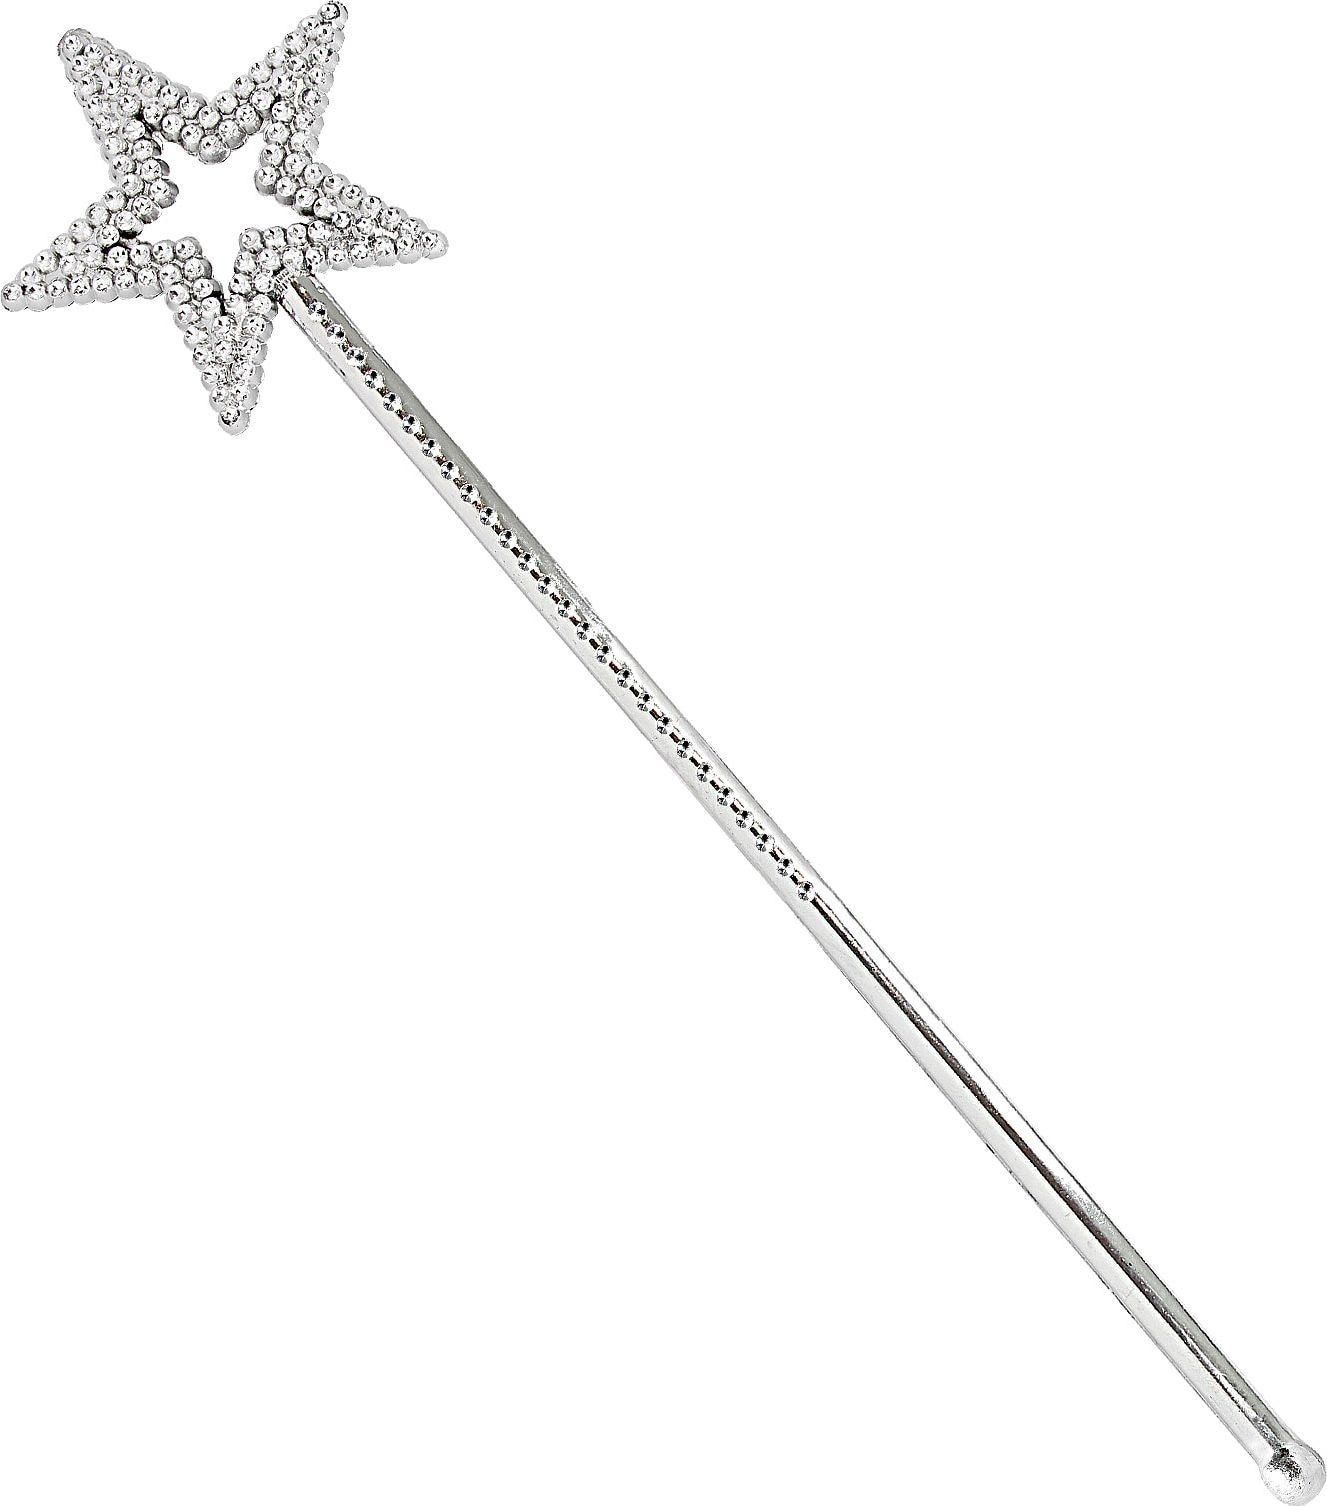 Peri Asası - Yıldız Peri Sopası - Yıldız Peri Değneği - Yıldız Asa 34 cm (Lisinya)